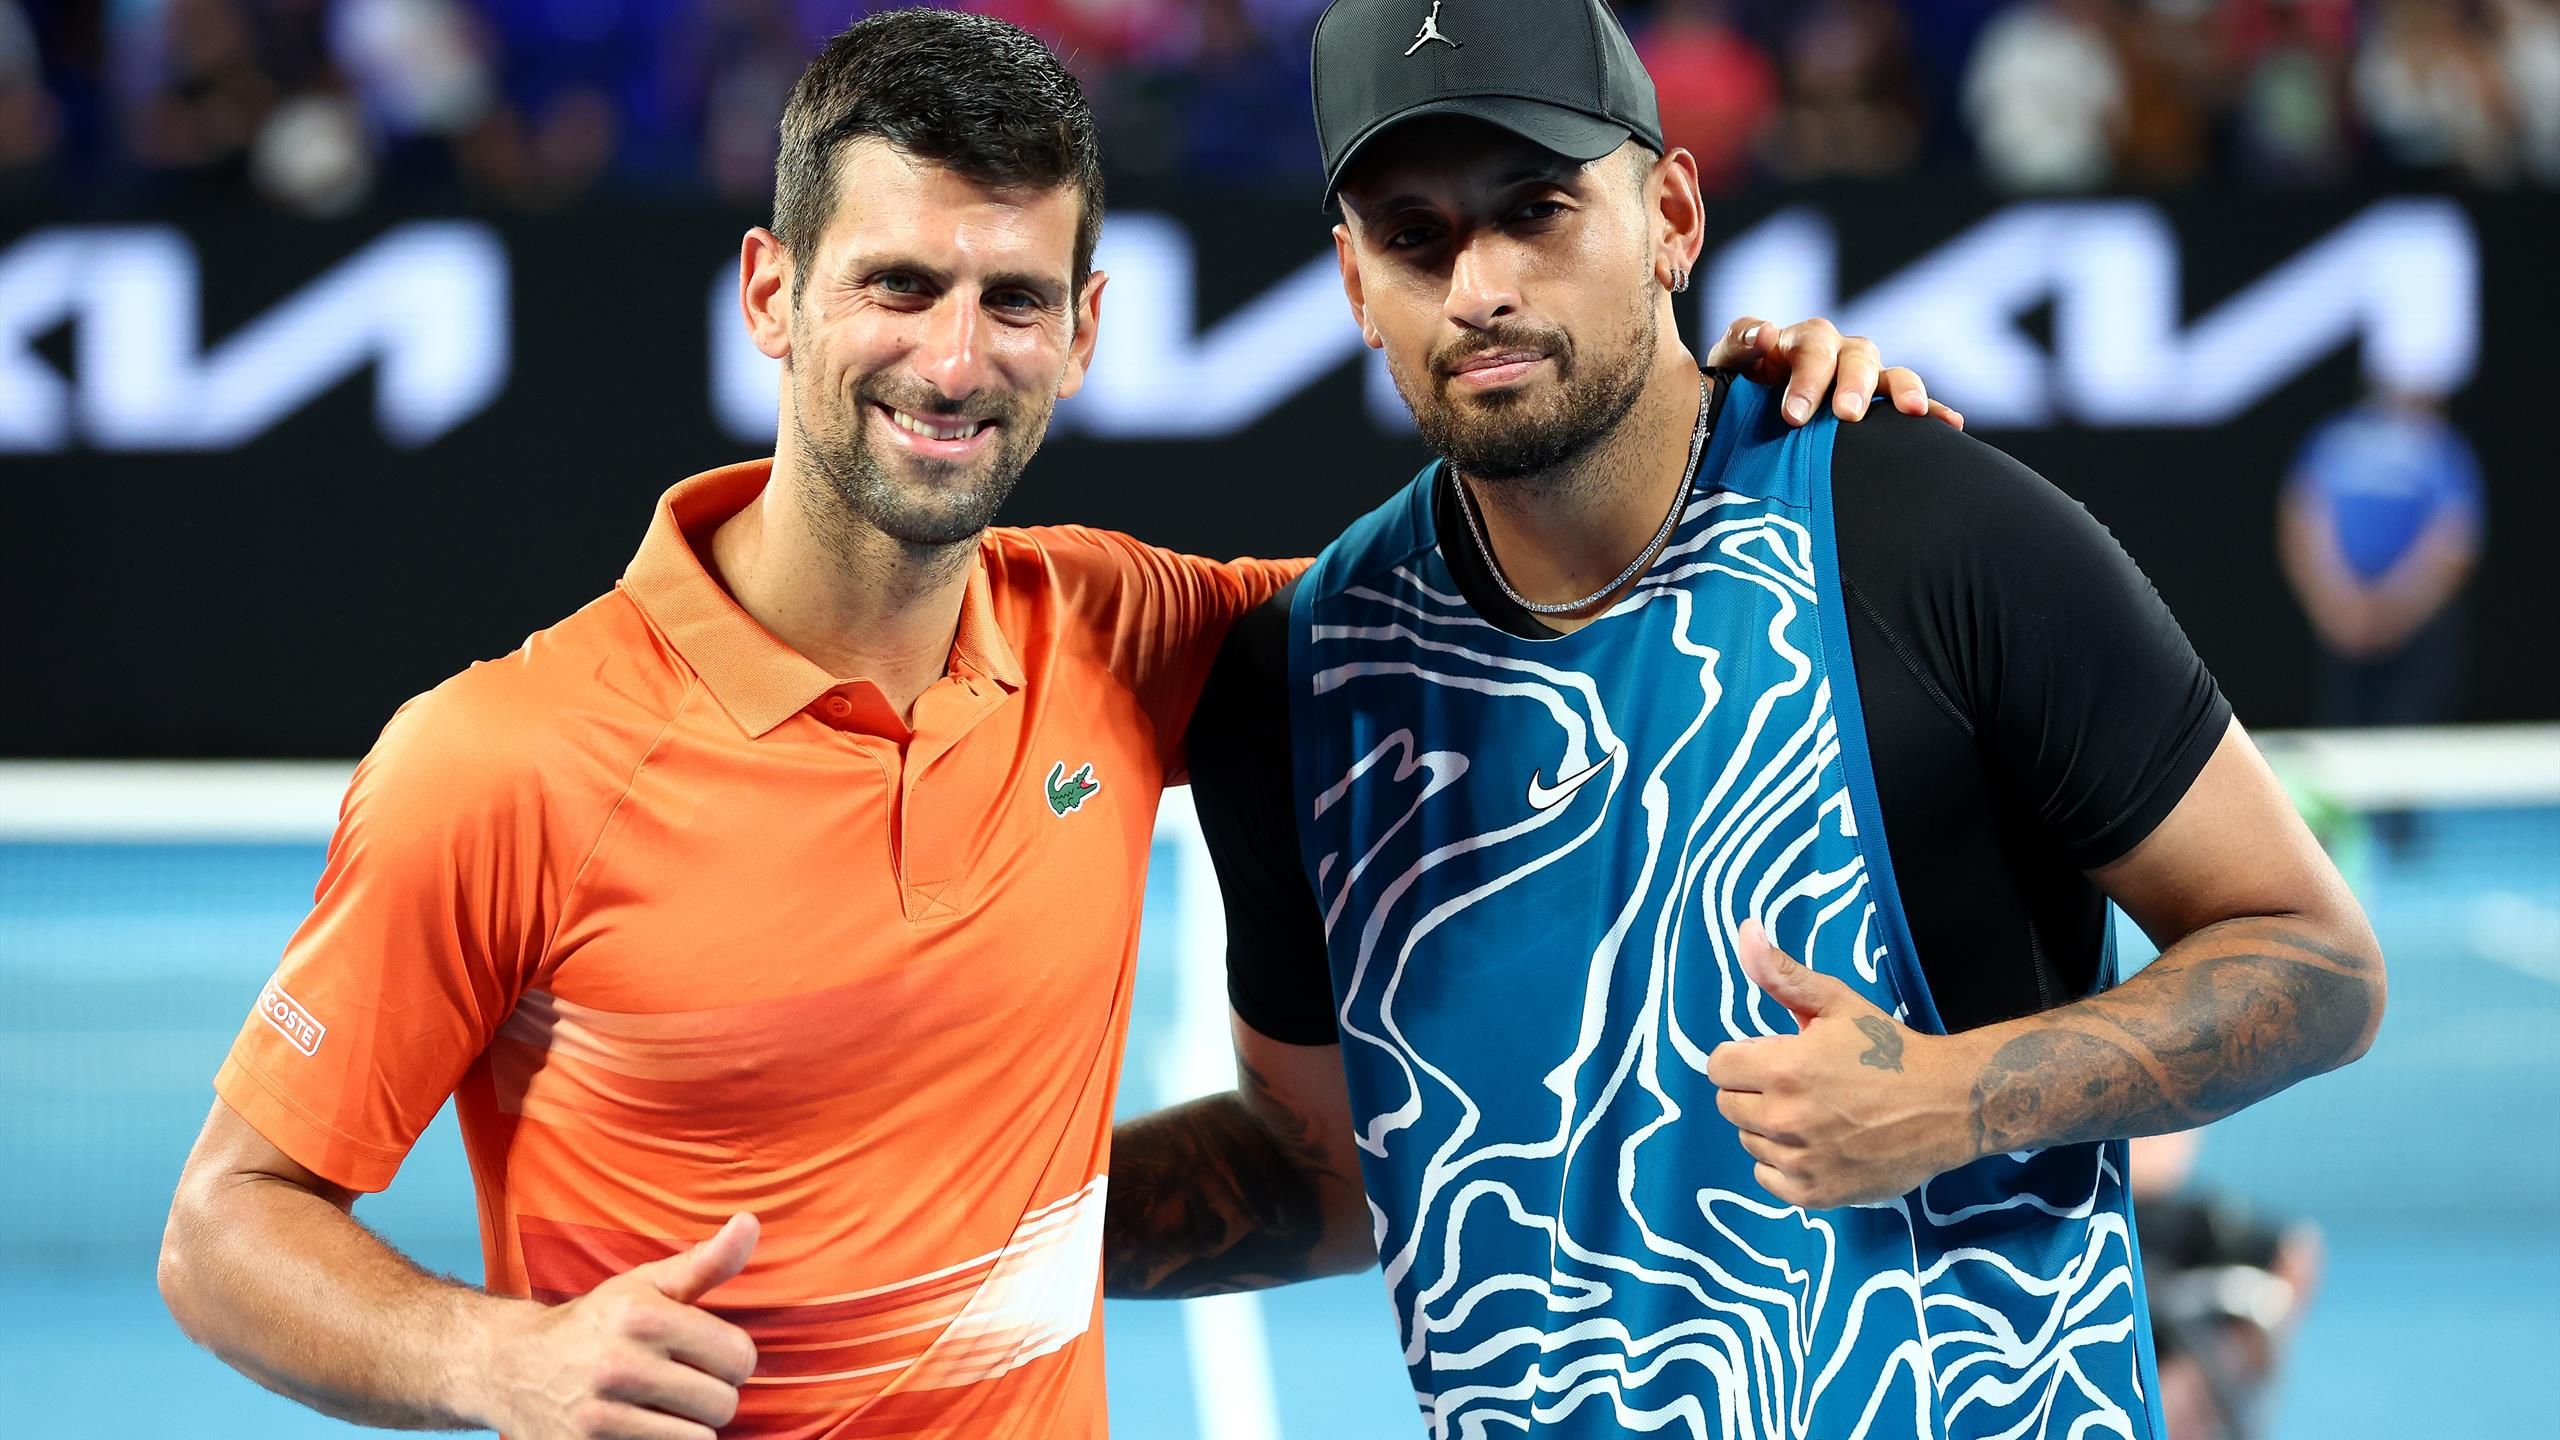 Australian Open Novak Djokovic und Nick Kyrgios unterhalten Publikum bei Charity-Match in Melbourne - Tennis Video